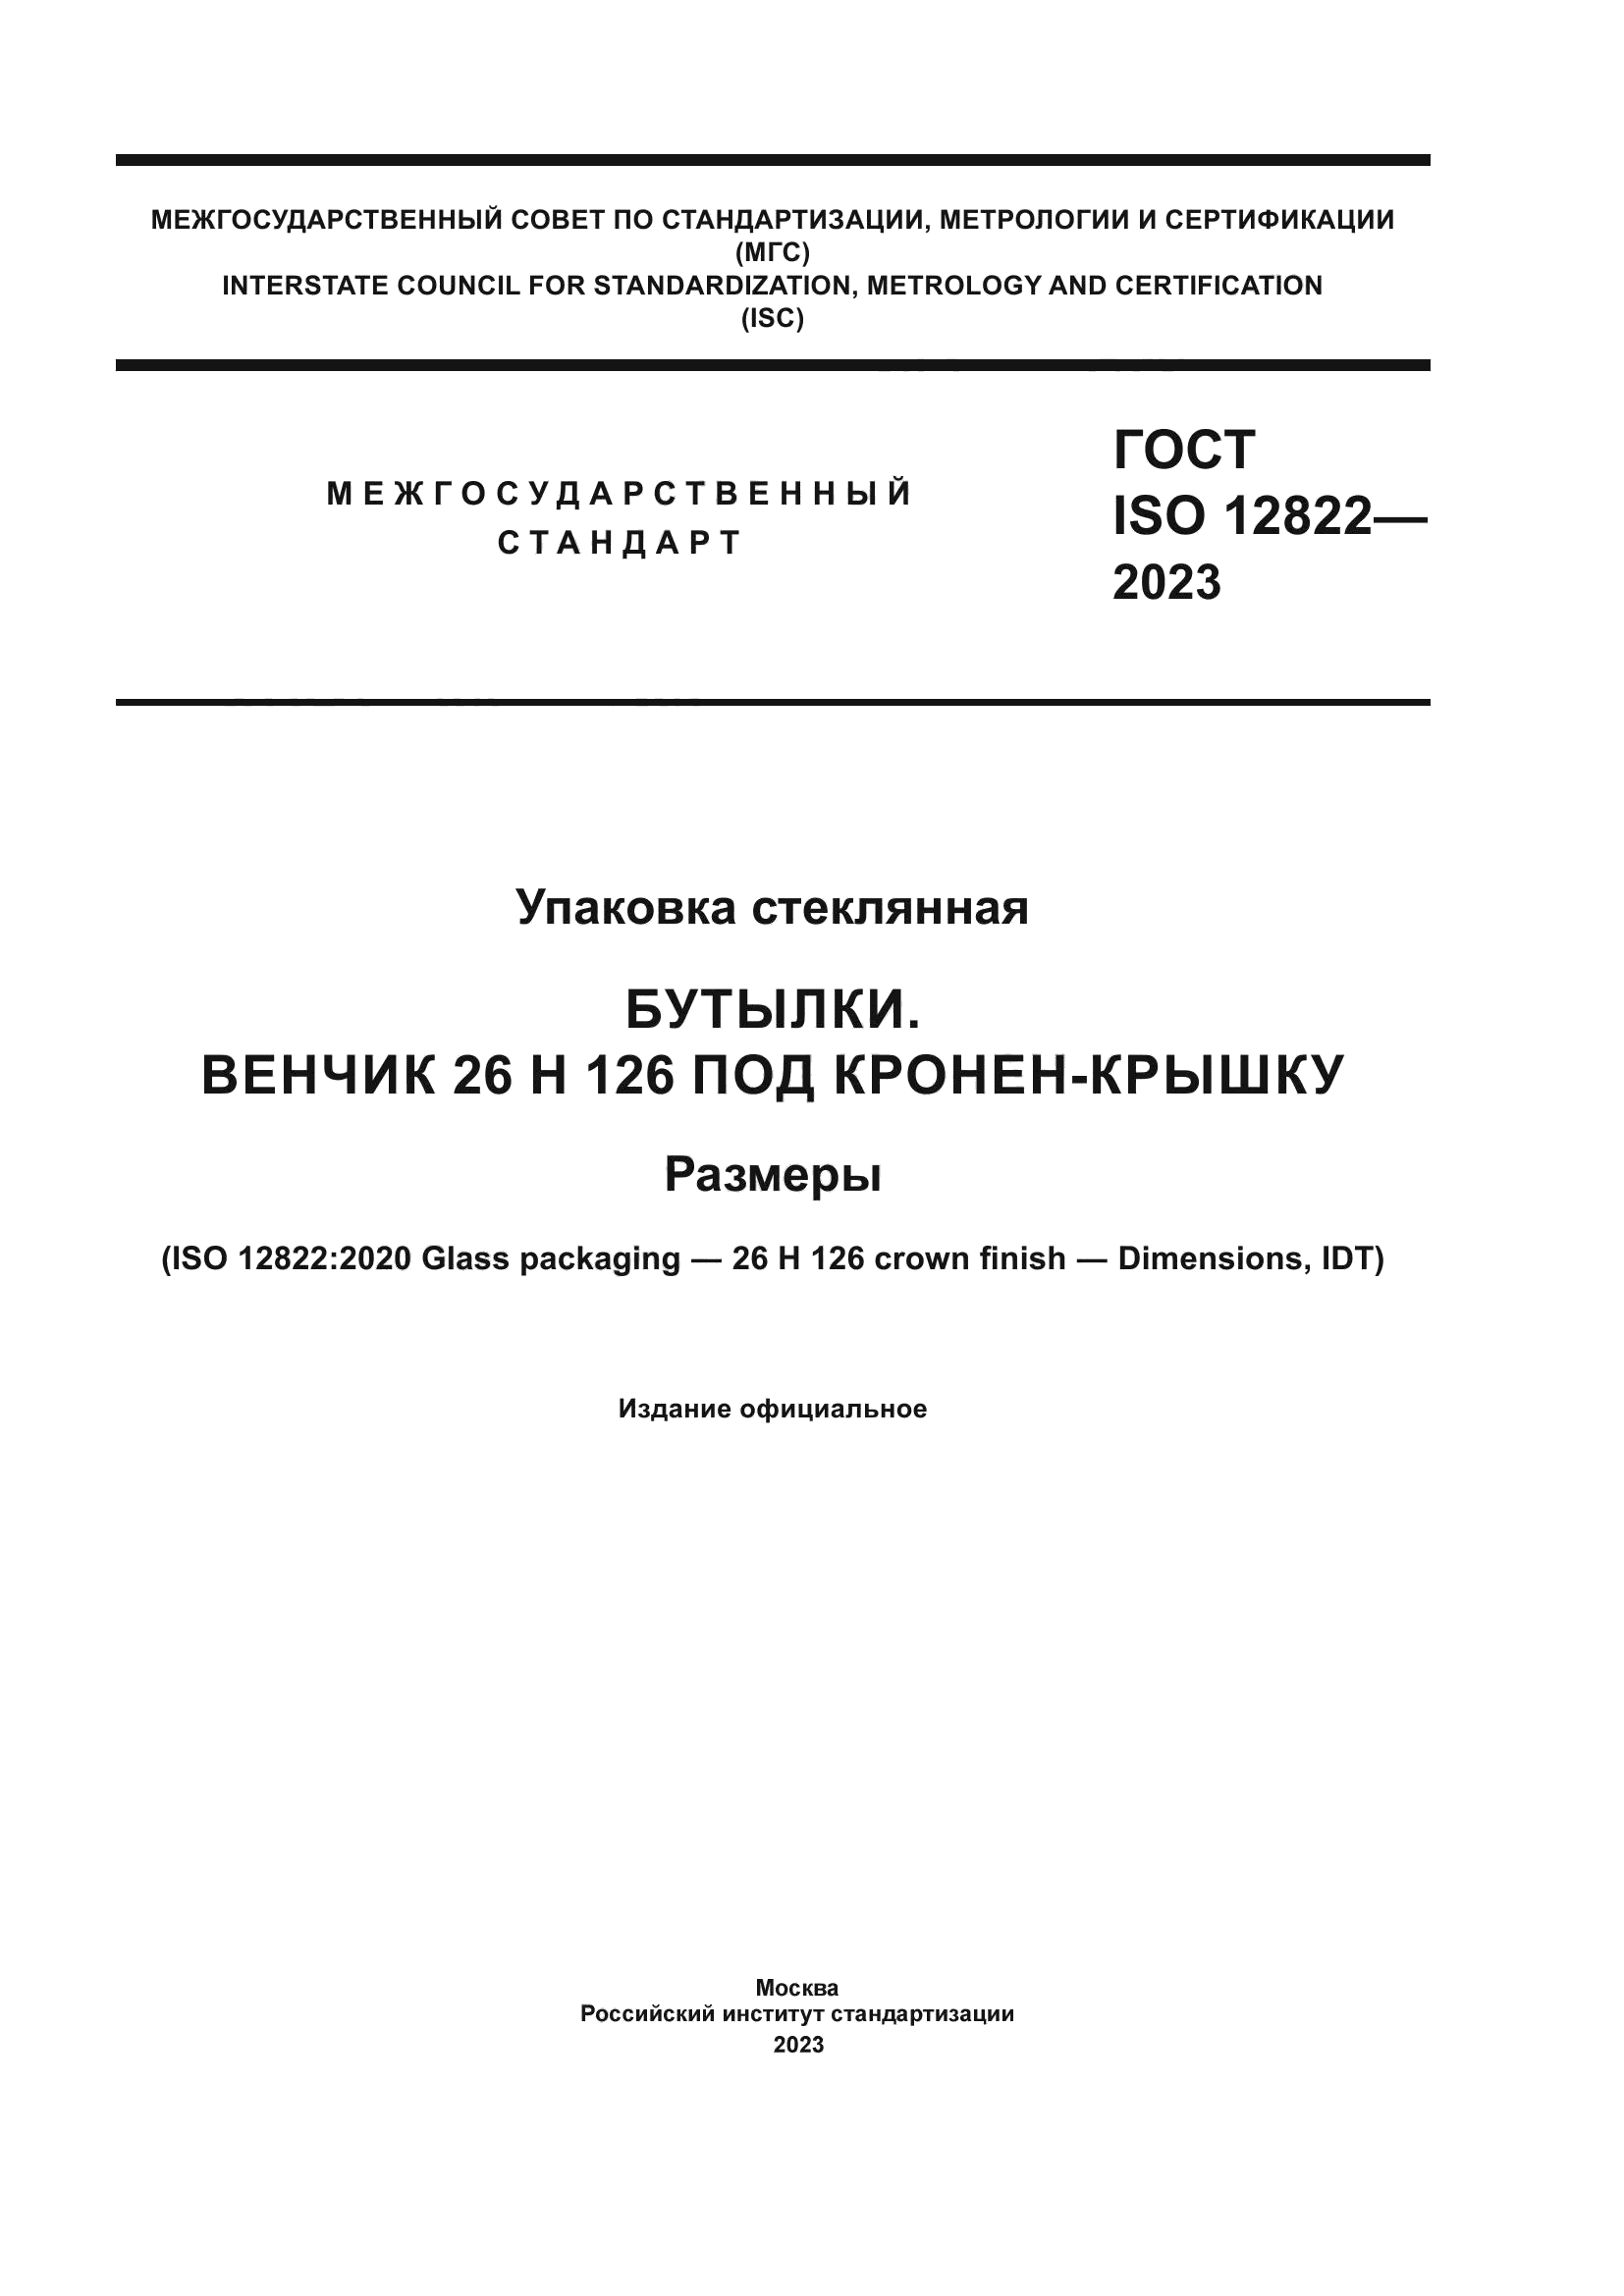 ГОСТ ISO 12822-2023